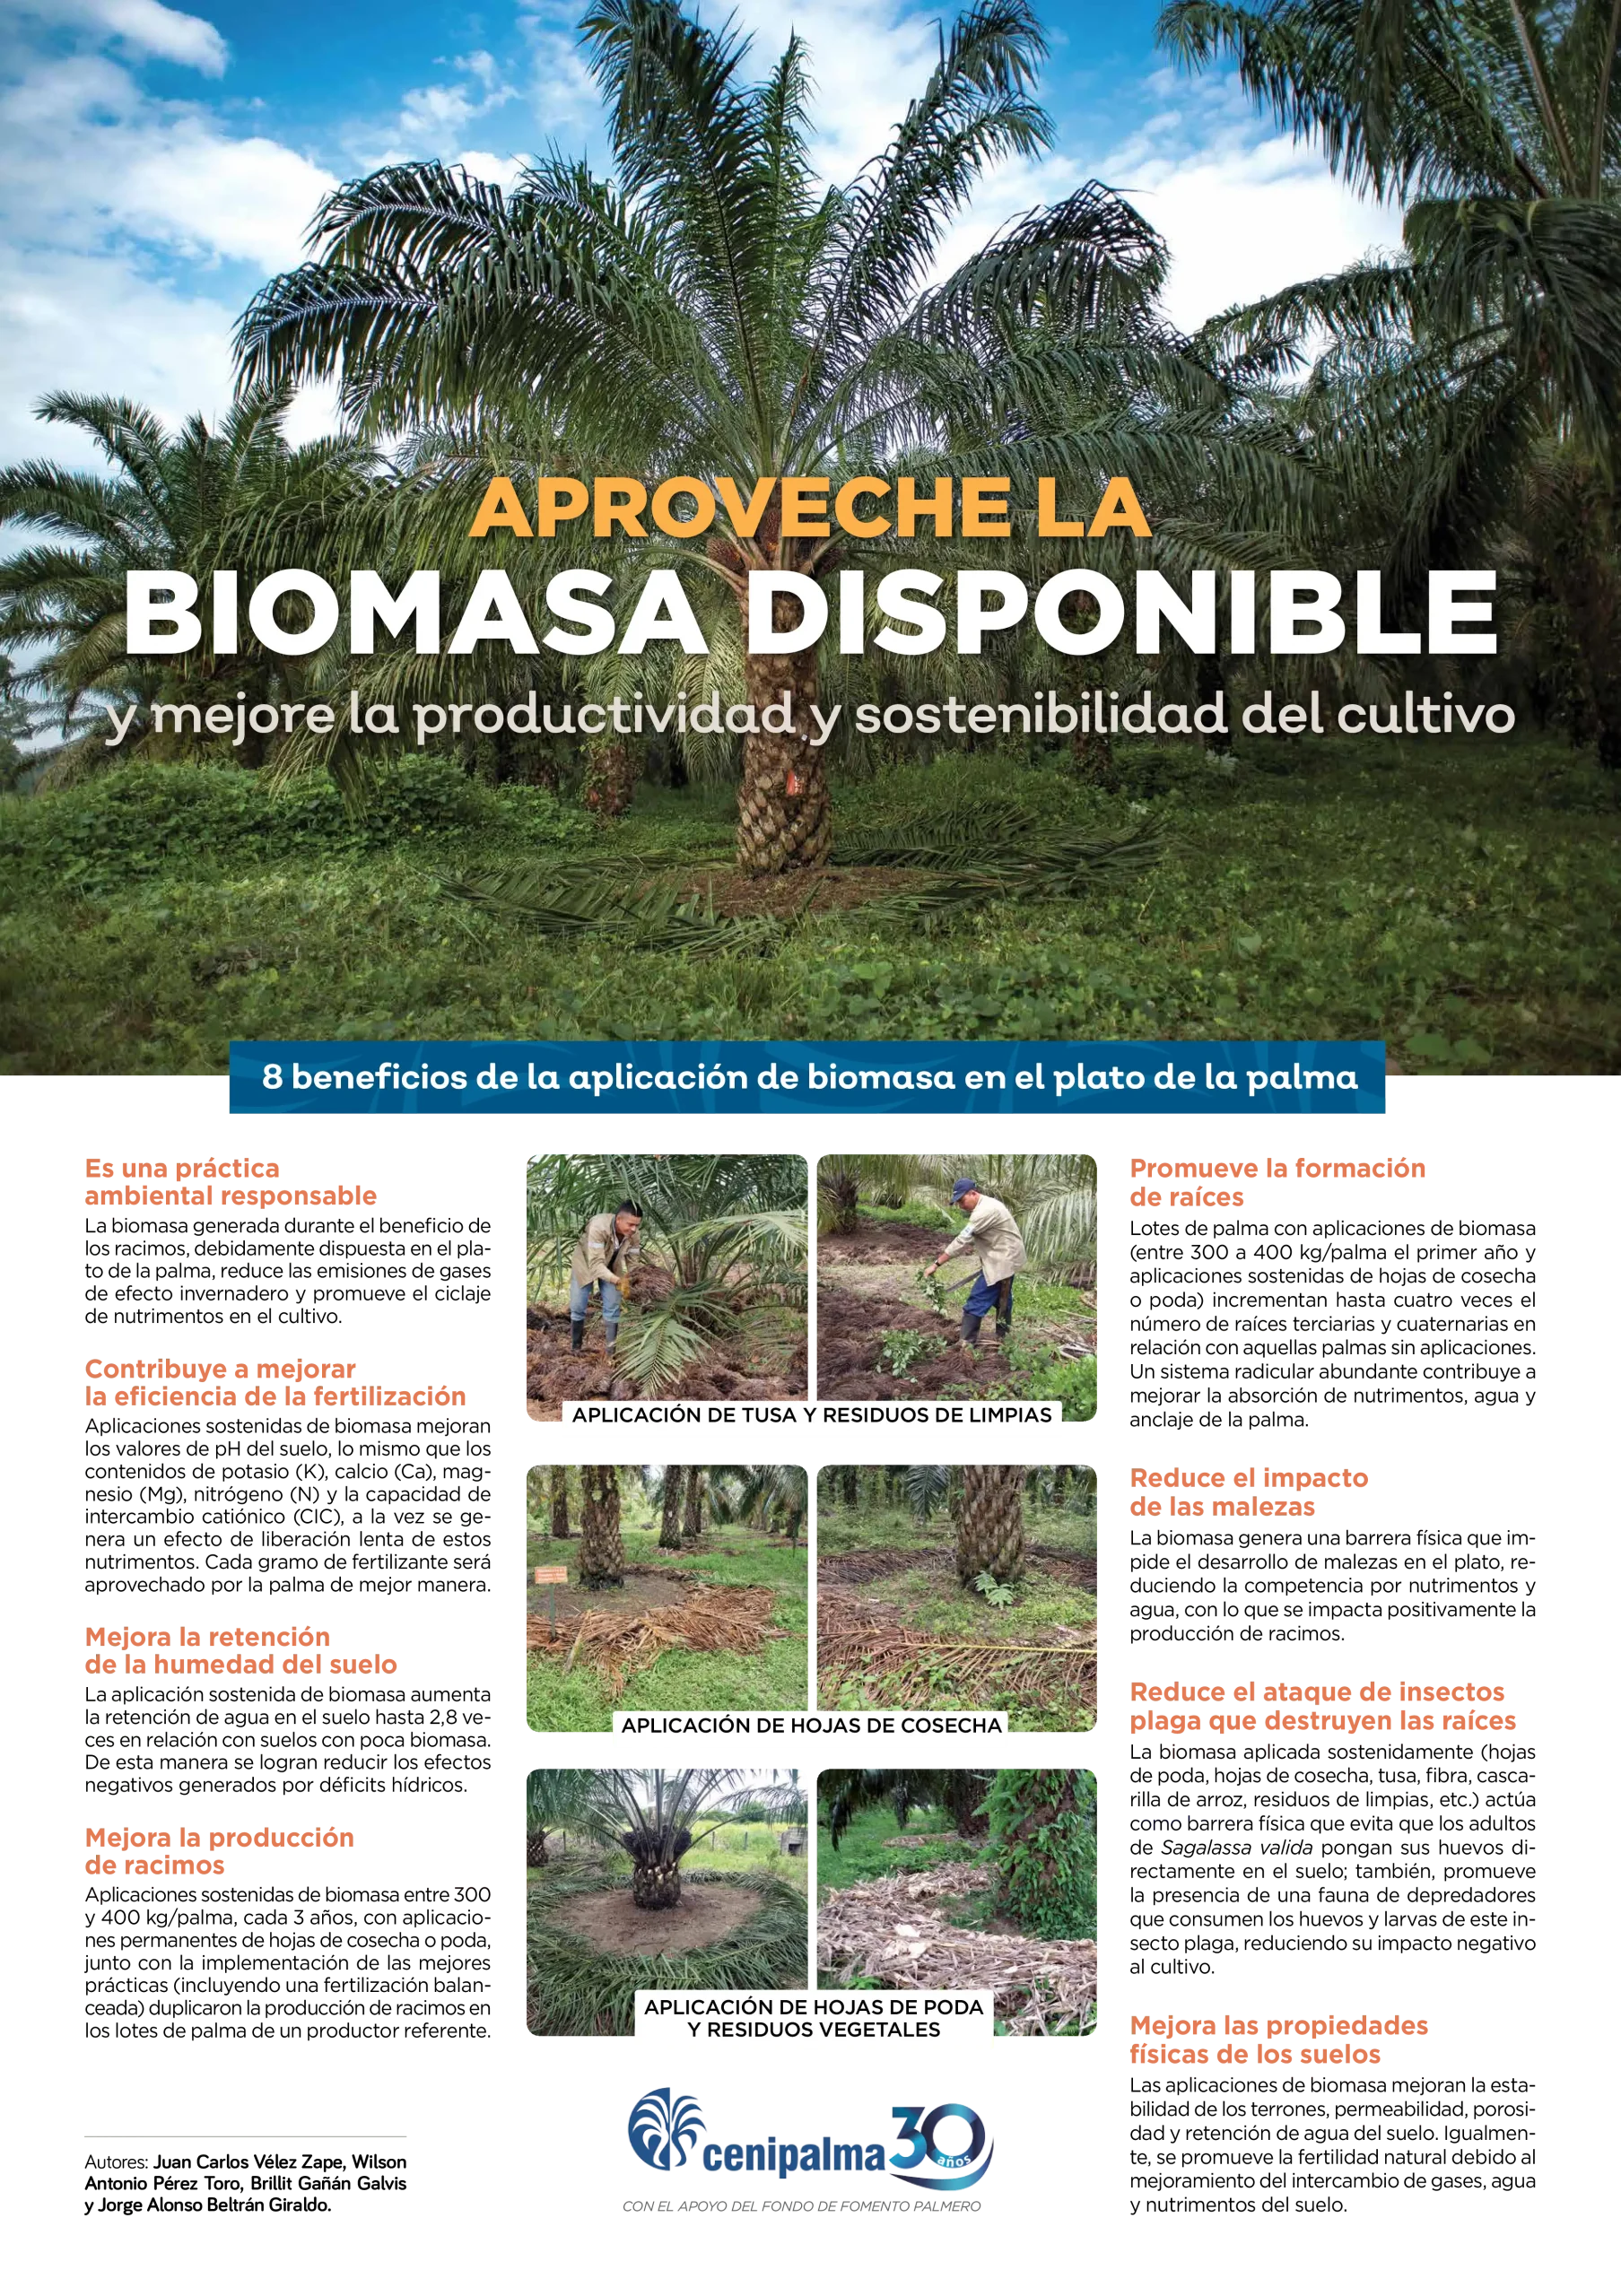 Para saber más sobre biomasa disponible consulta